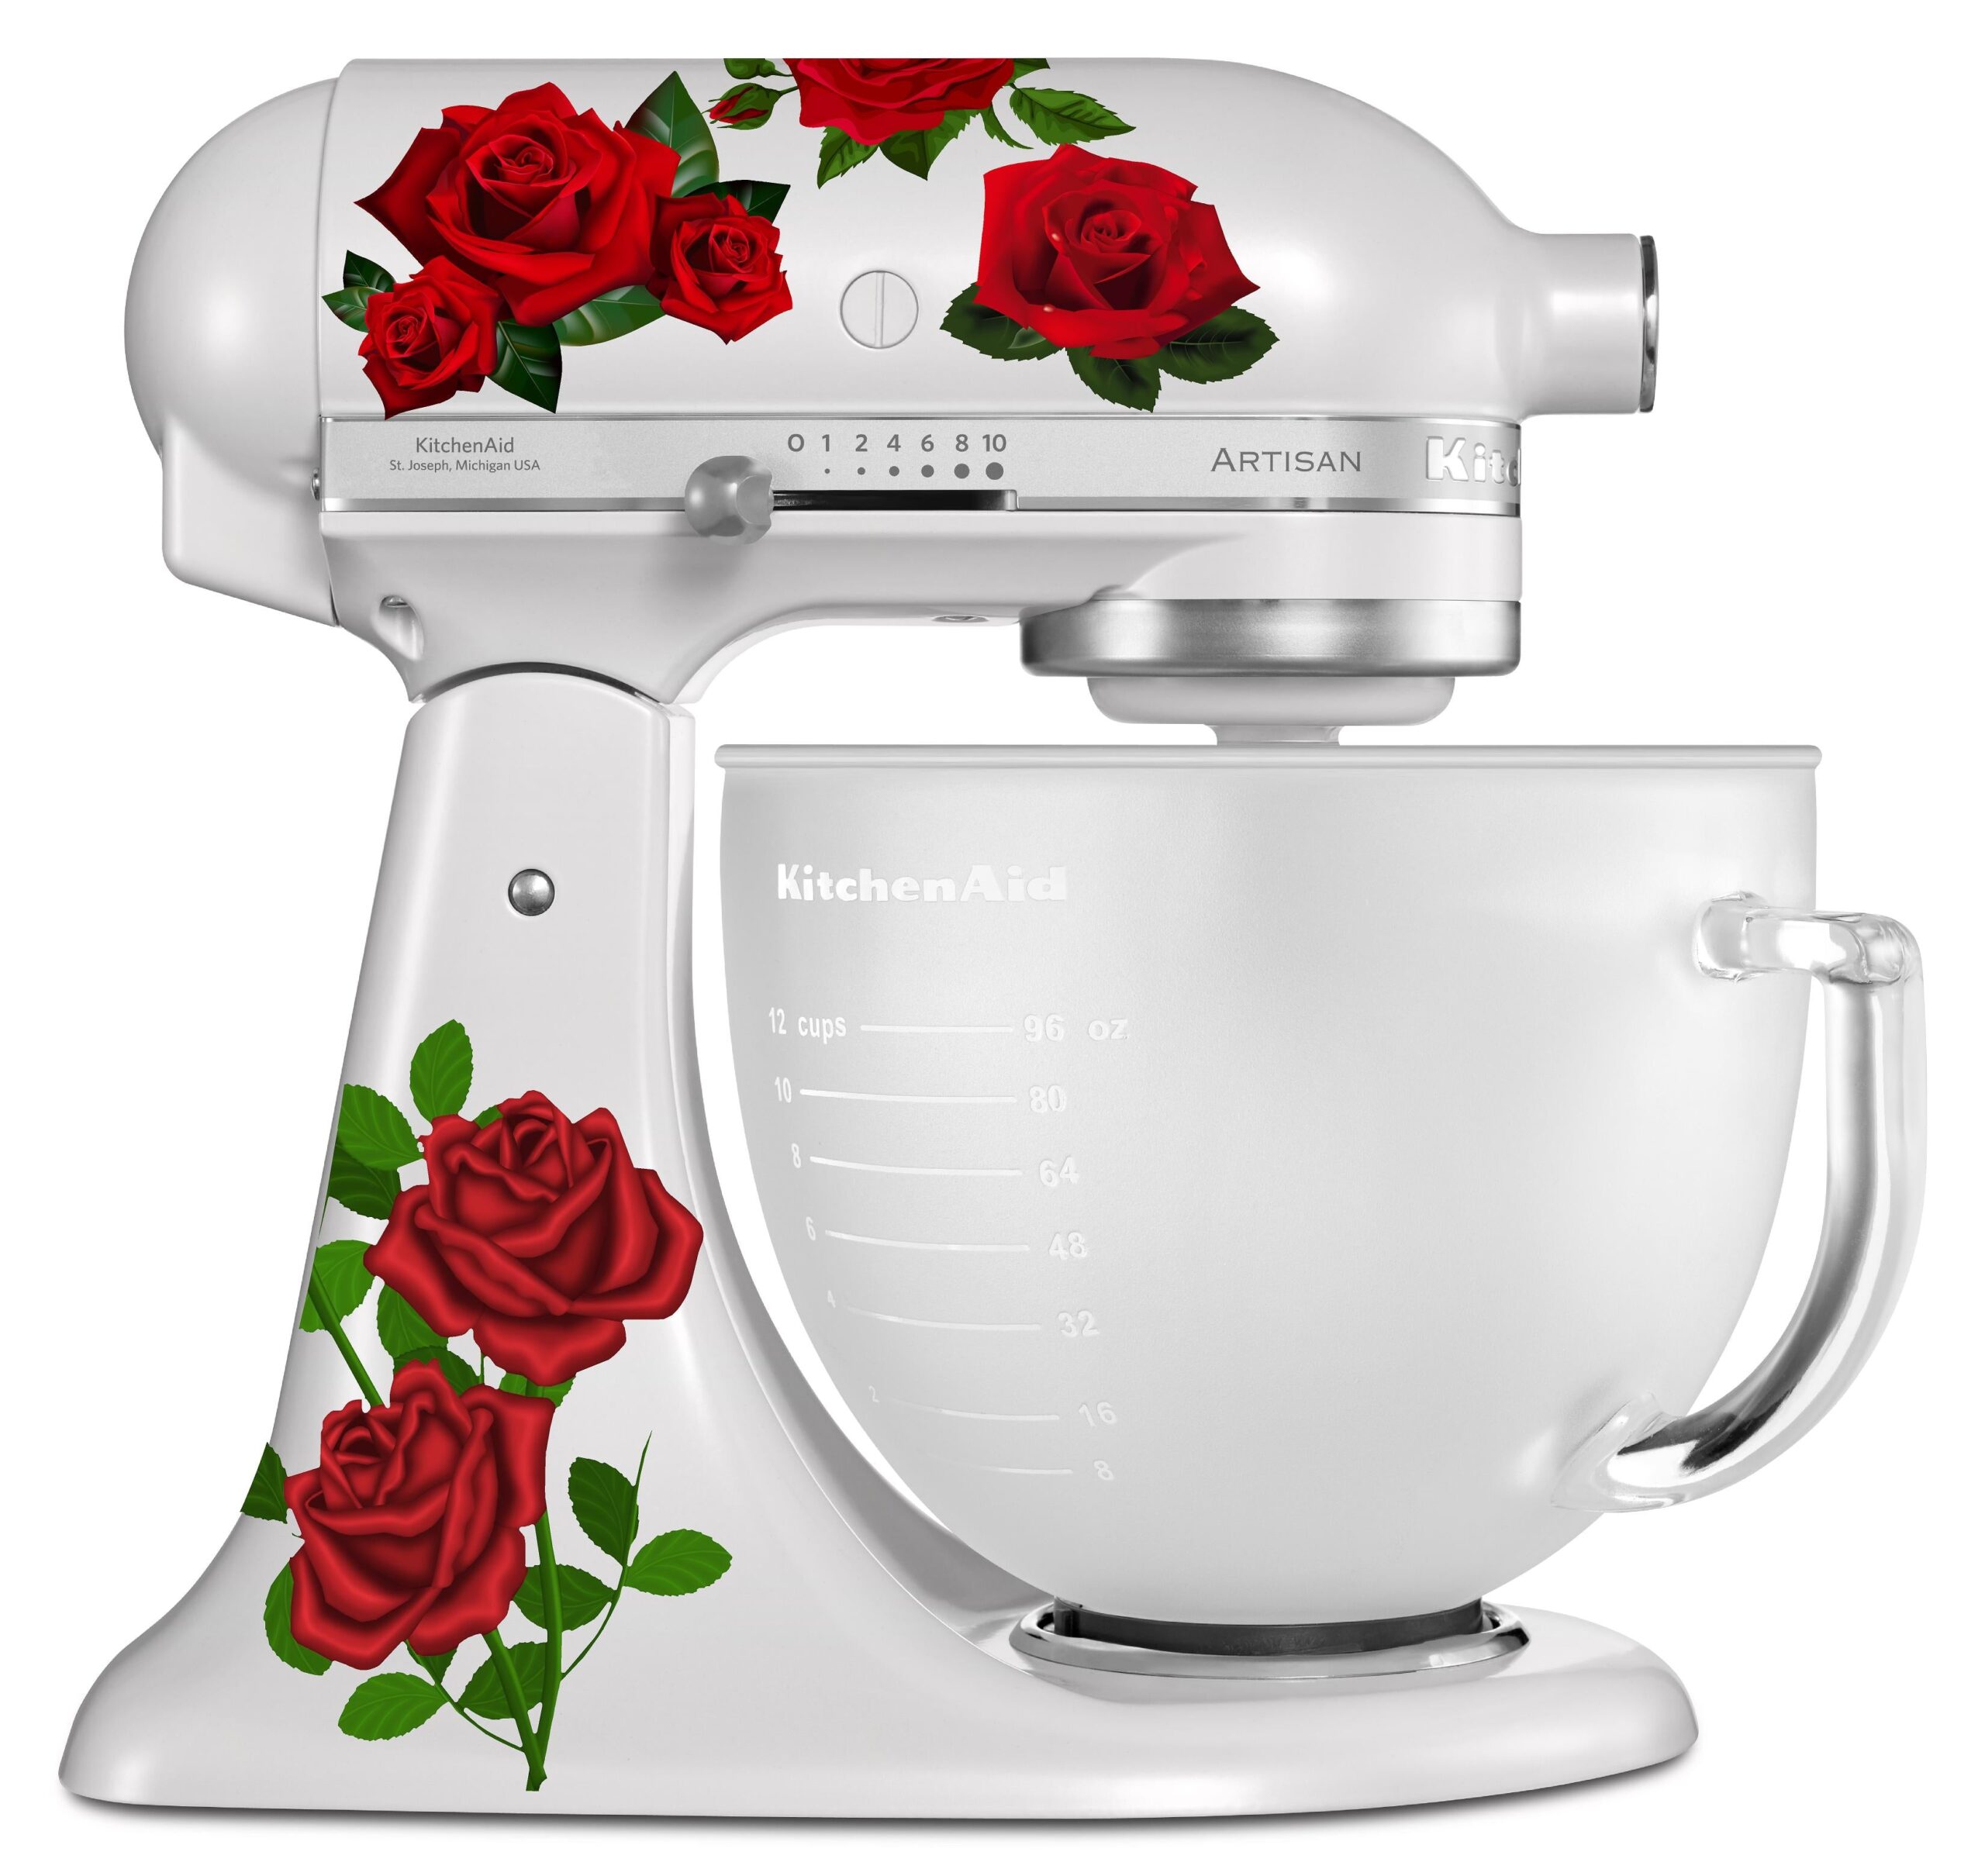 Kitchen Aid Mixer Decals, Pink, Red, Dark Pink, Burgundy, Cream, Buff,  Floral Decals, Kitchen Mixer, Stand Mixer, Rose Stickers, Wildflower 